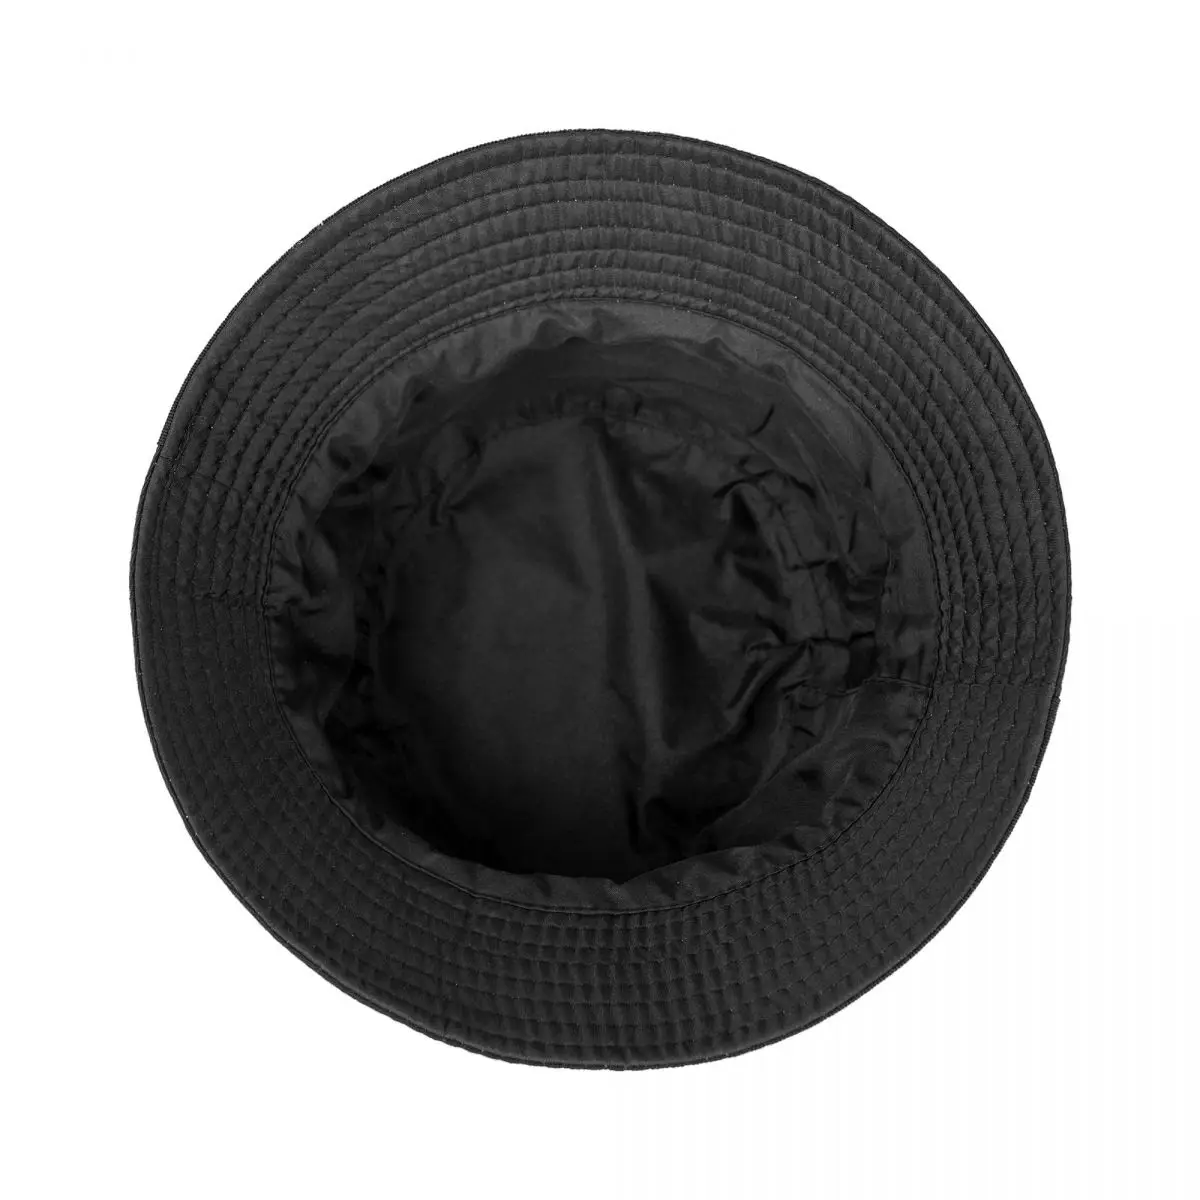 Новая официальная черная панама Bieber's Peaches, черная кепка дальнобойщика, женские шляпы, мужские